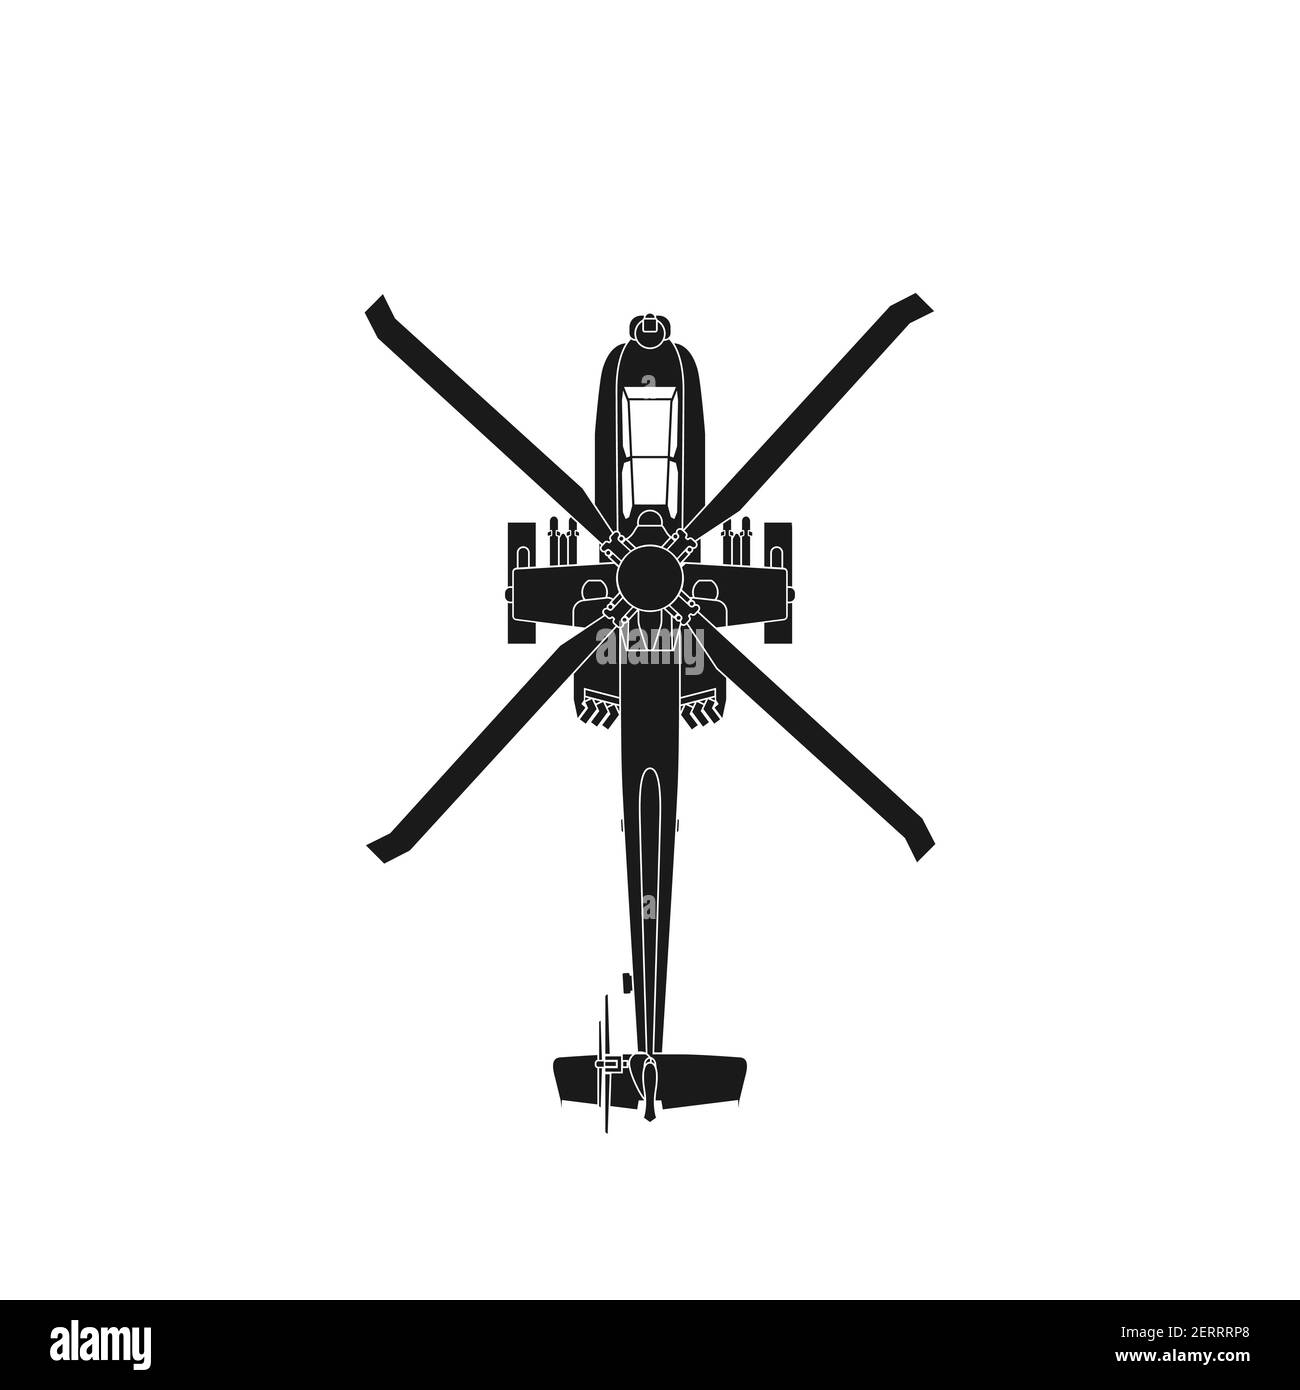 Realistische Vektor-Symbol militärischen Angriff Hubschrauber militärischen Luftstreitkräfte der Vereinigten Staaten. Apache. Draufsicht. Stock Vektor